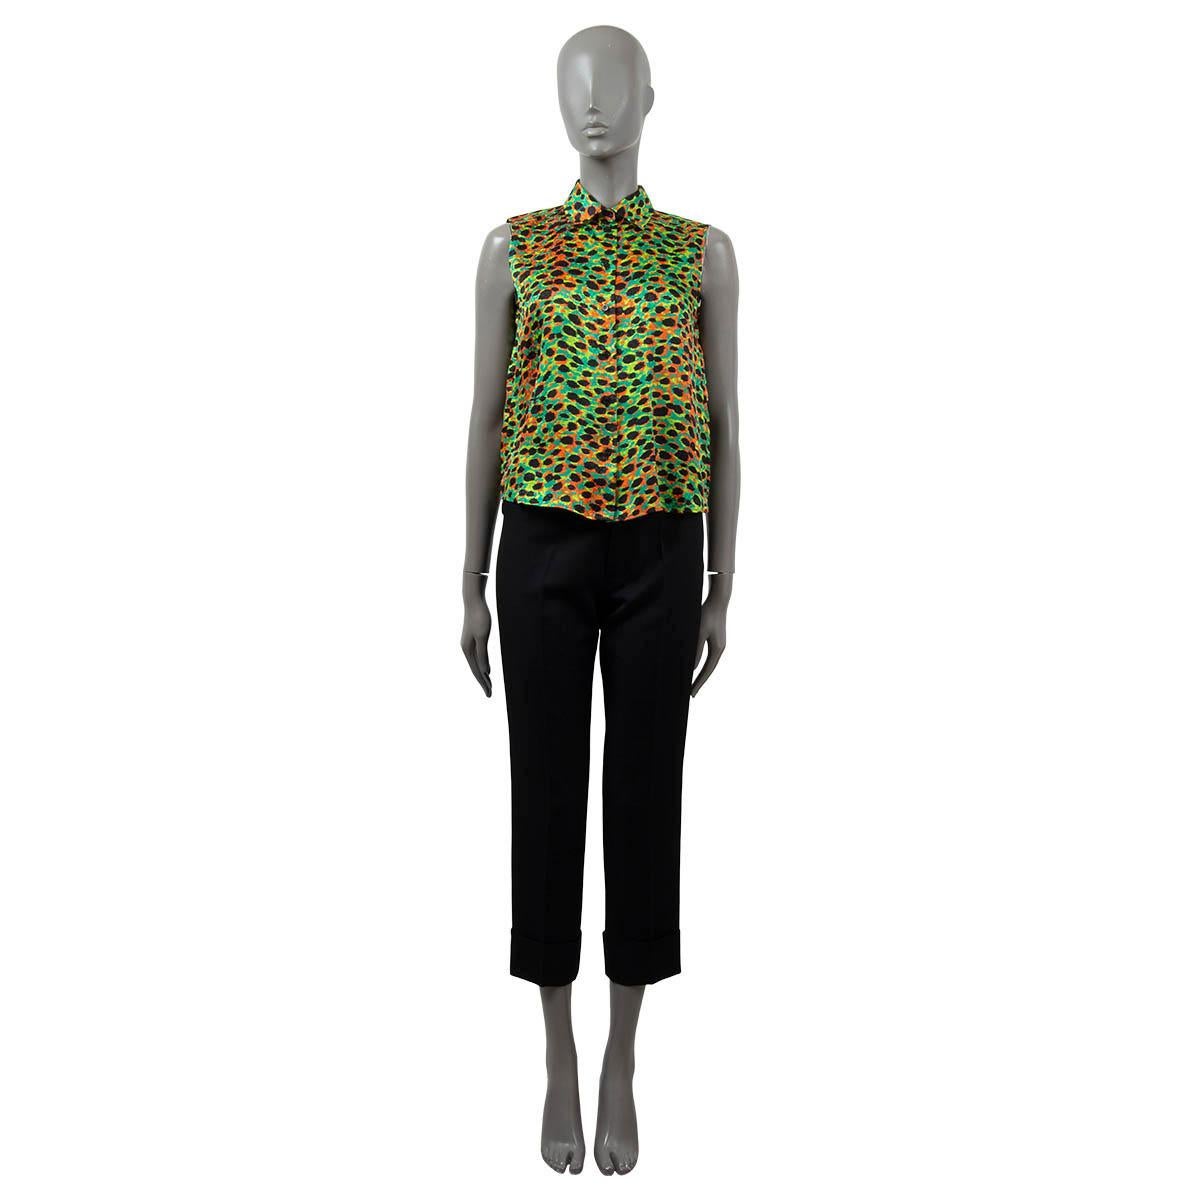 100% authentique Christian Dior blouse sans manche en soie léopard (100%) vert, orange, lime et noir. A été porté et est en excellent état. 

2022 Printemps/Été

Mesures
Modèle	Dior22E
Taille de l'étiquette	36
Taille	XS
Largeur de l'épaule	35cm